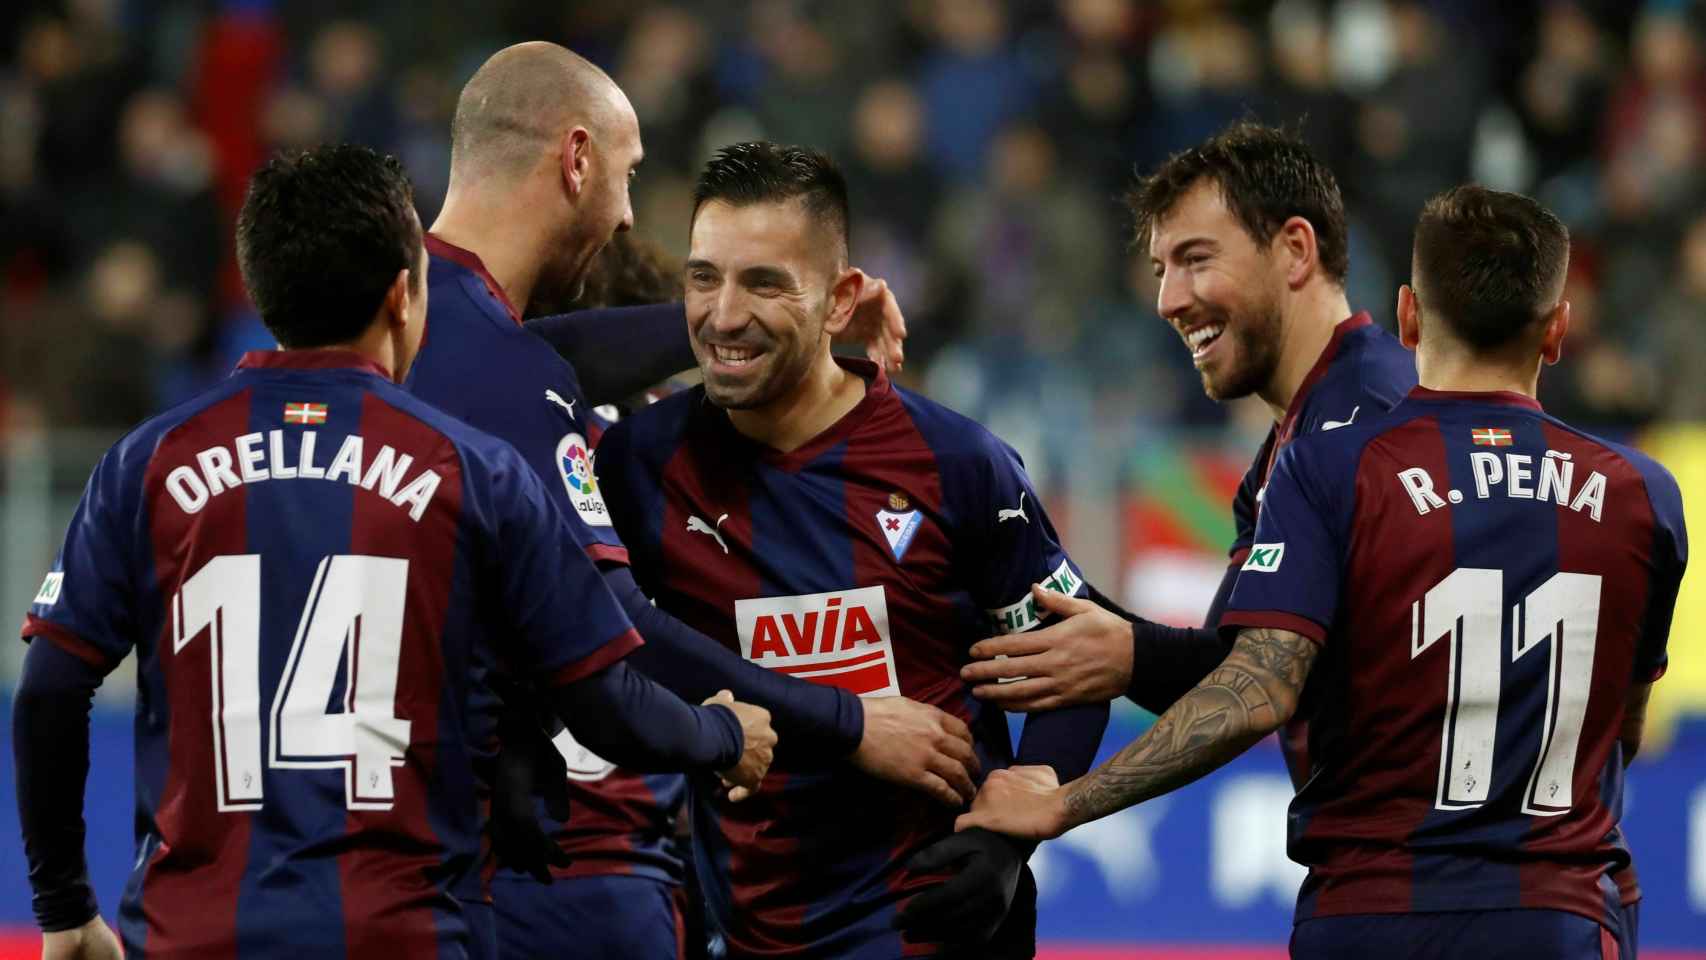 Charles celebra con sus compañeros uno de sus goles en el Eibar - Girona de La Liga